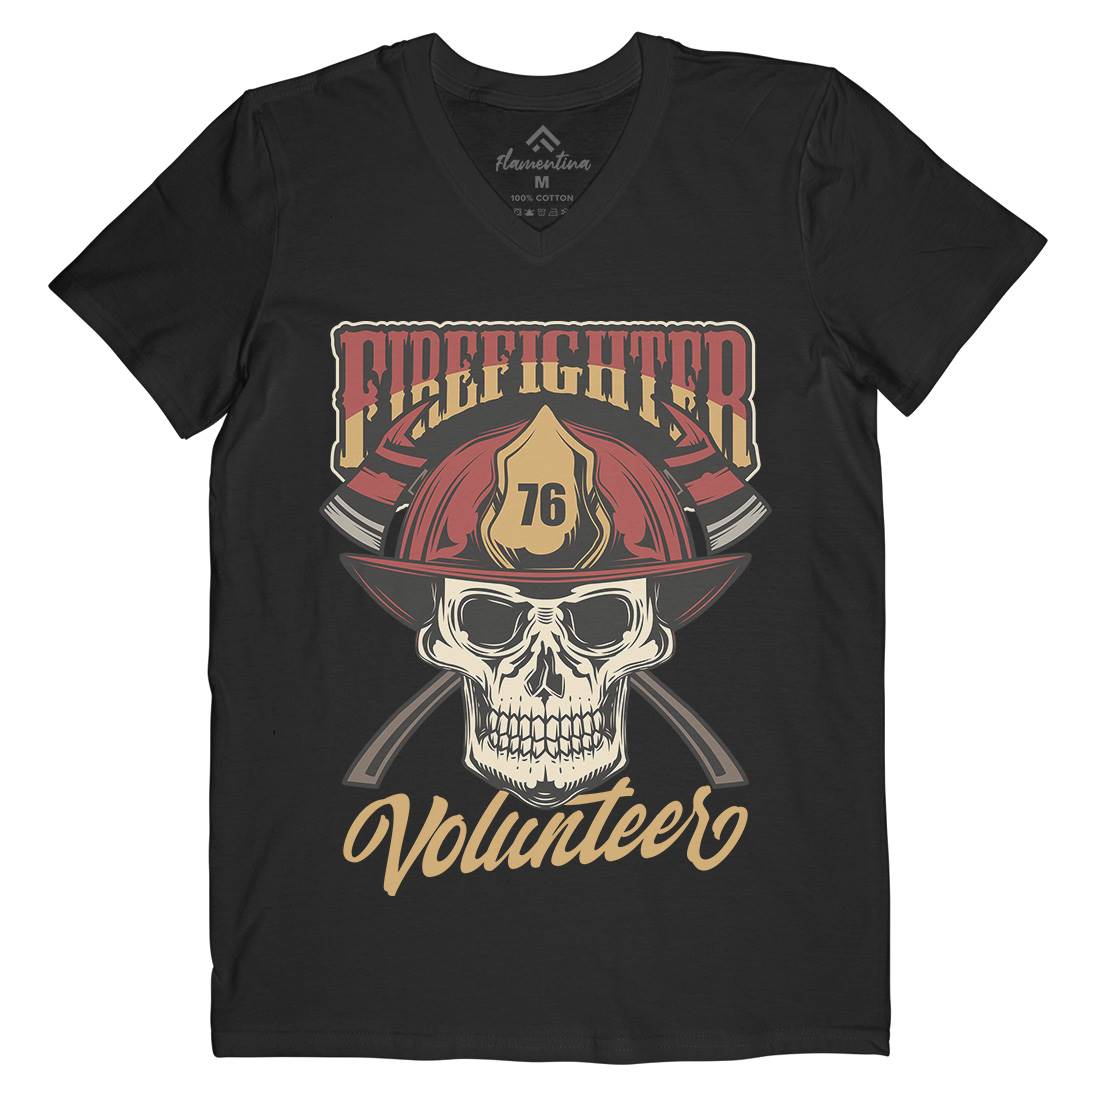 Volunteer Mens Organic V-Neck T-Shirt Firefighters C826